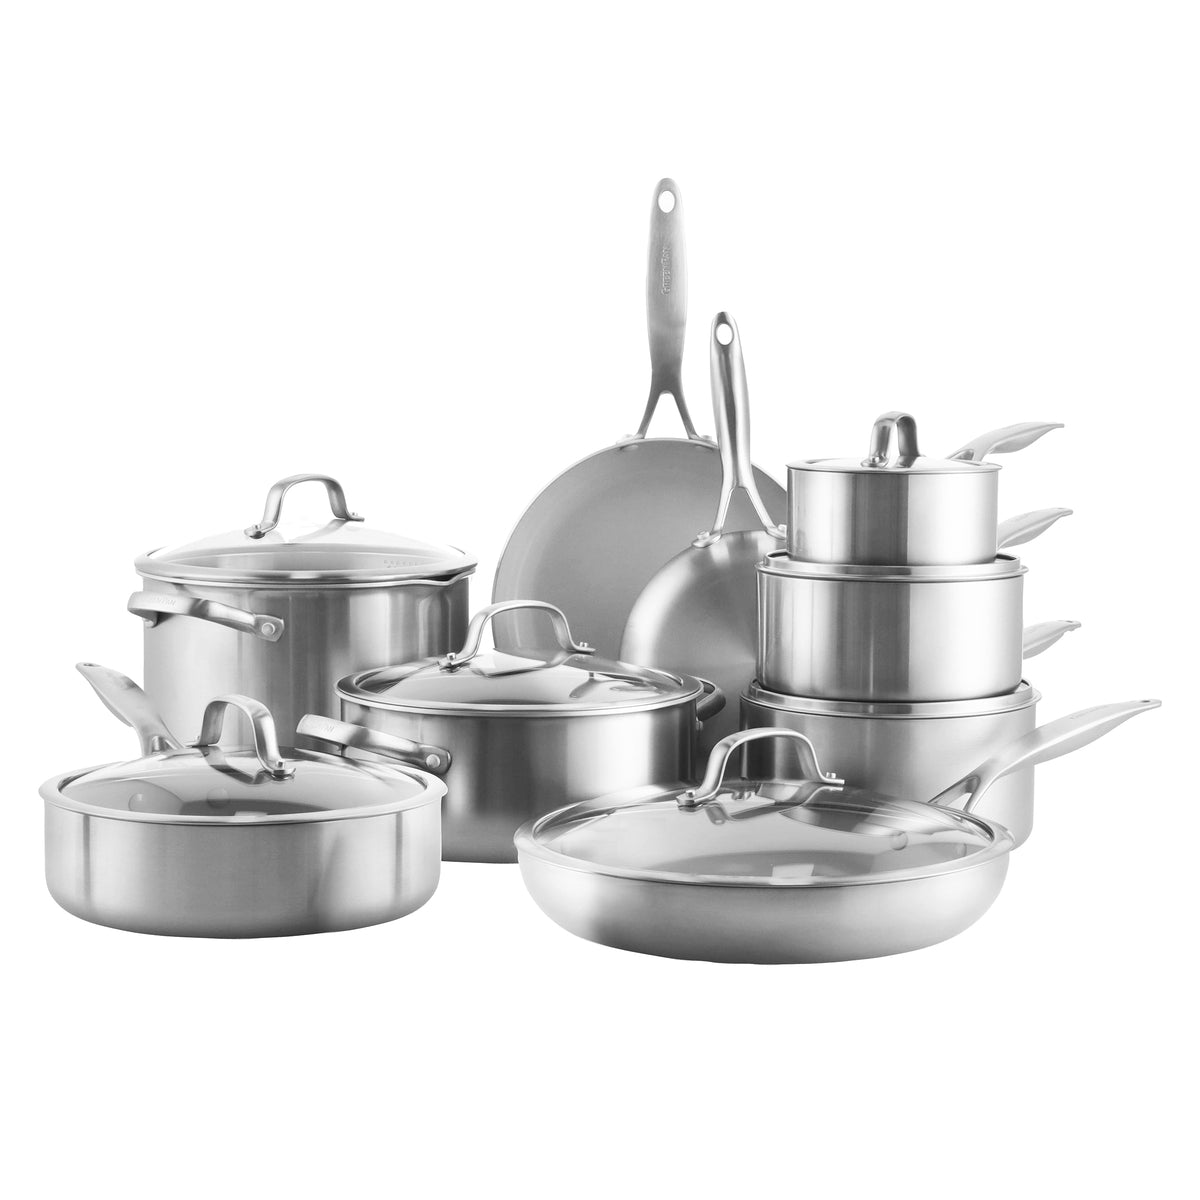 Pots and Pans Set Nonstick 16 PCS, Induction Cookware Kitchen